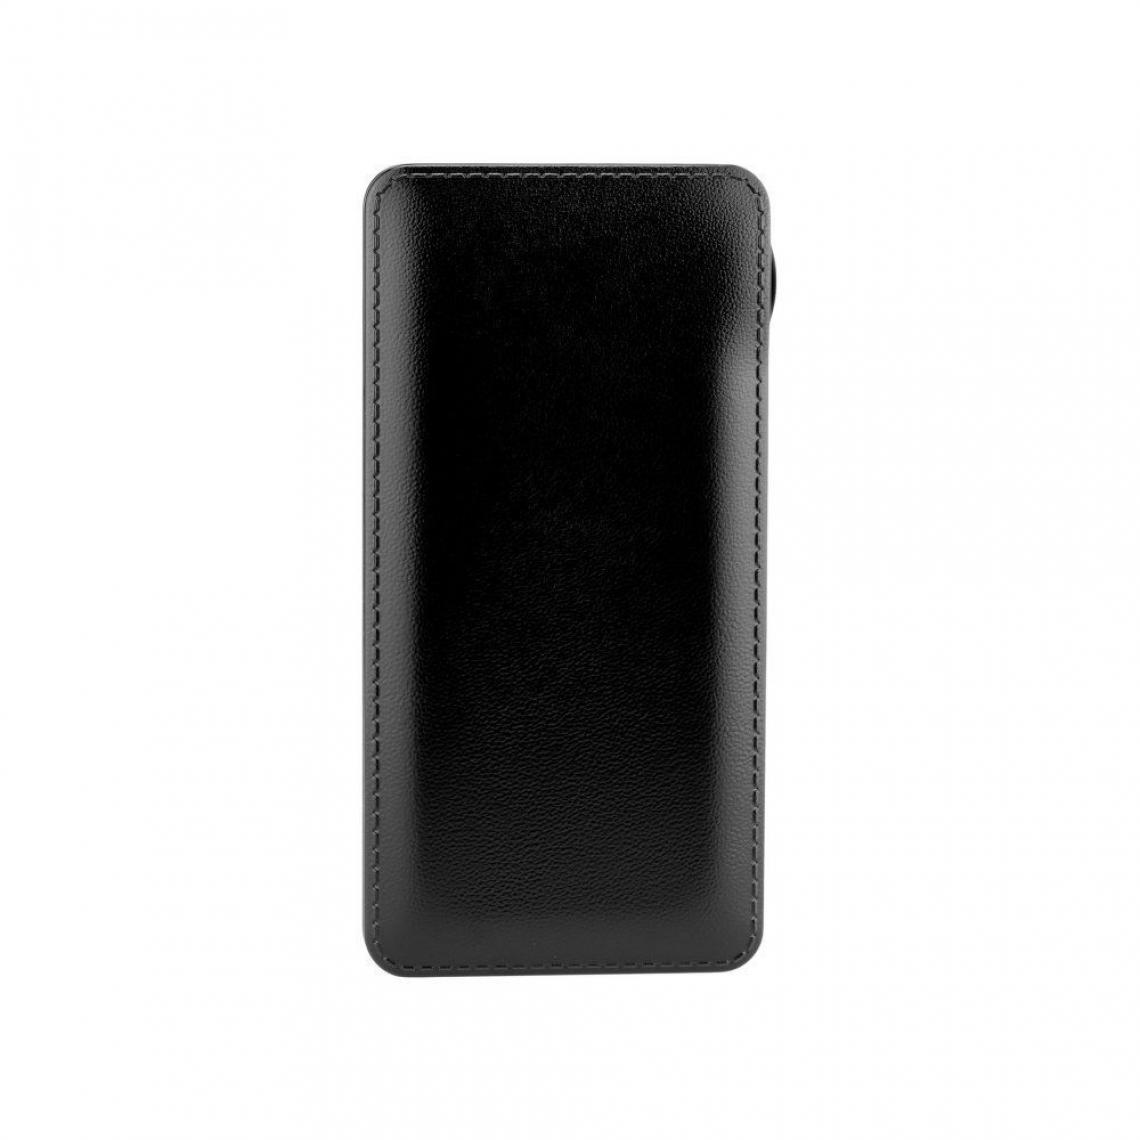 Ozzzo - Chargeur batterie externe 30000 mAh powerbank ozzzo noir pour UMiDIGI A9 Pro - Autres accessoires smartphone